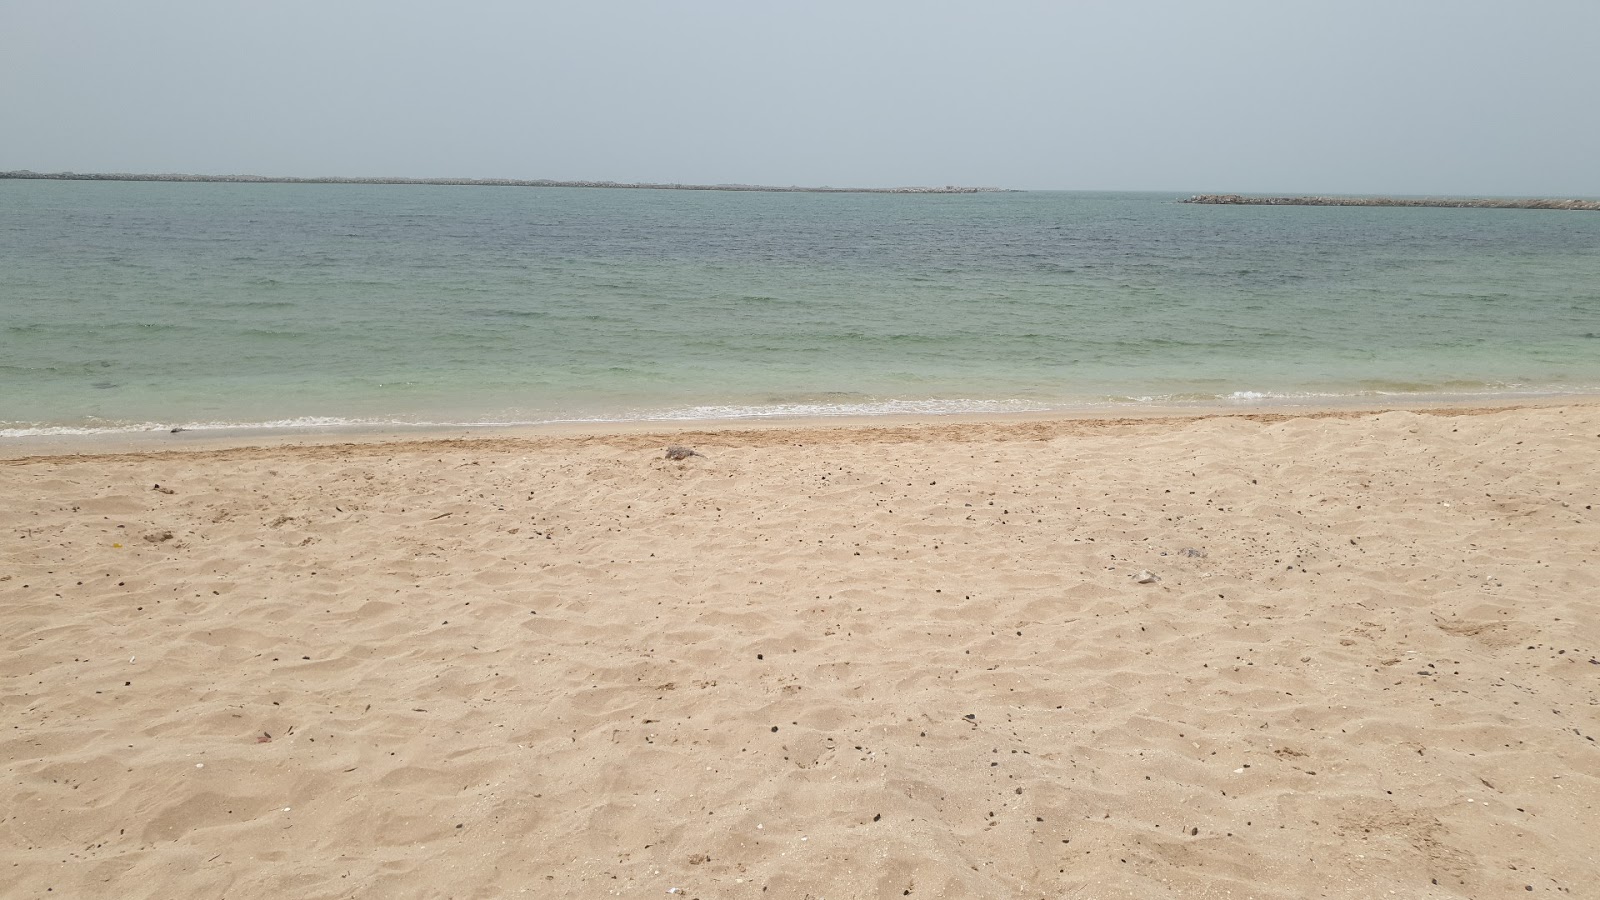 Ras Al Khaimah resort'in fotoğrafı geniş plaj ile birlikte